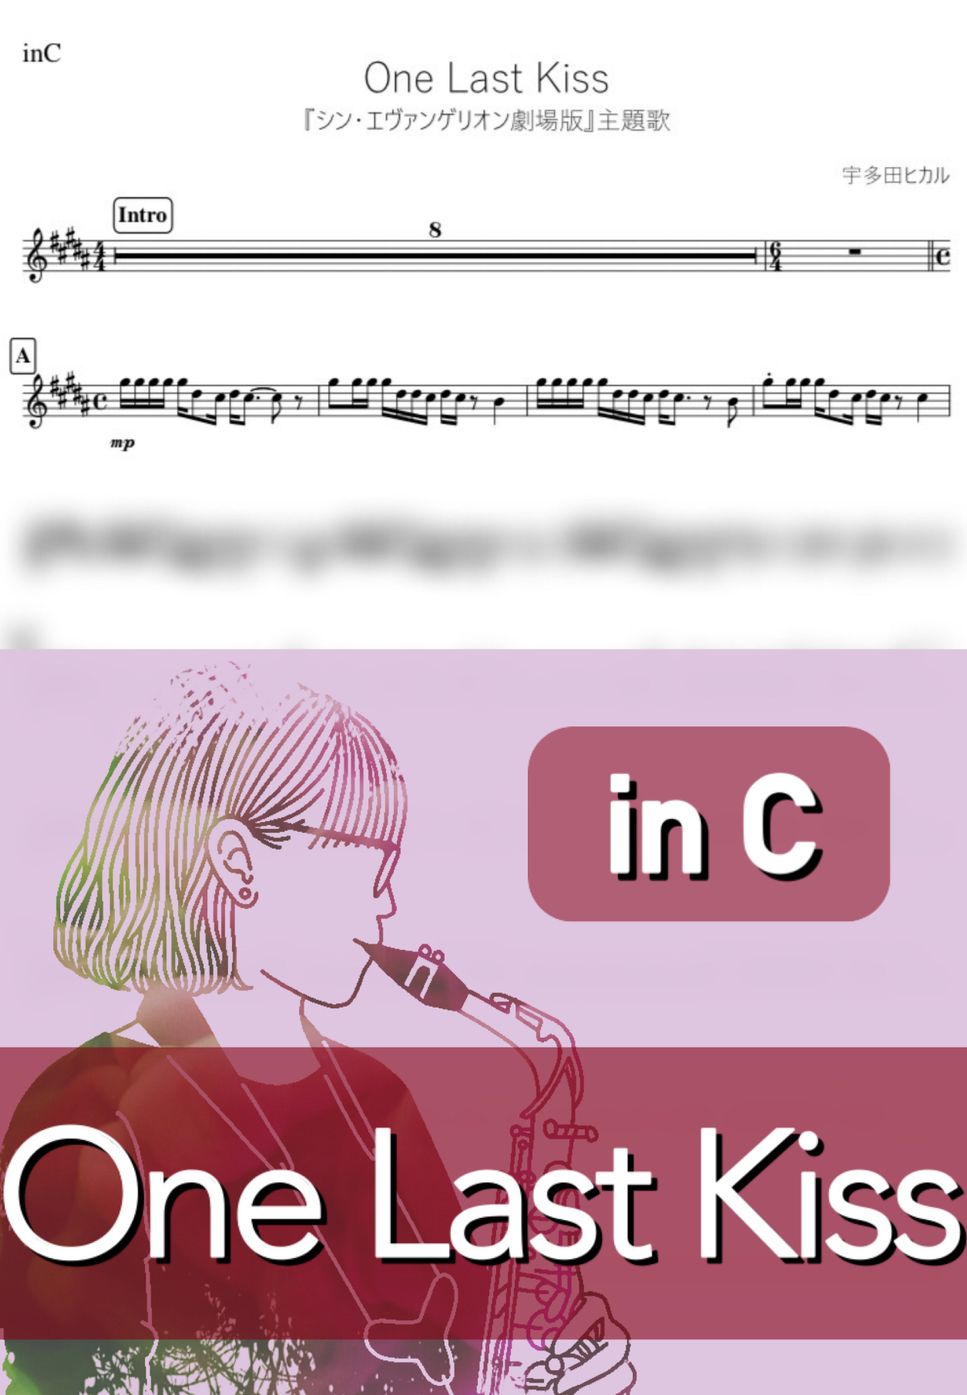 宇多田ヒカル - One Last Kiss (C) by kanamusic